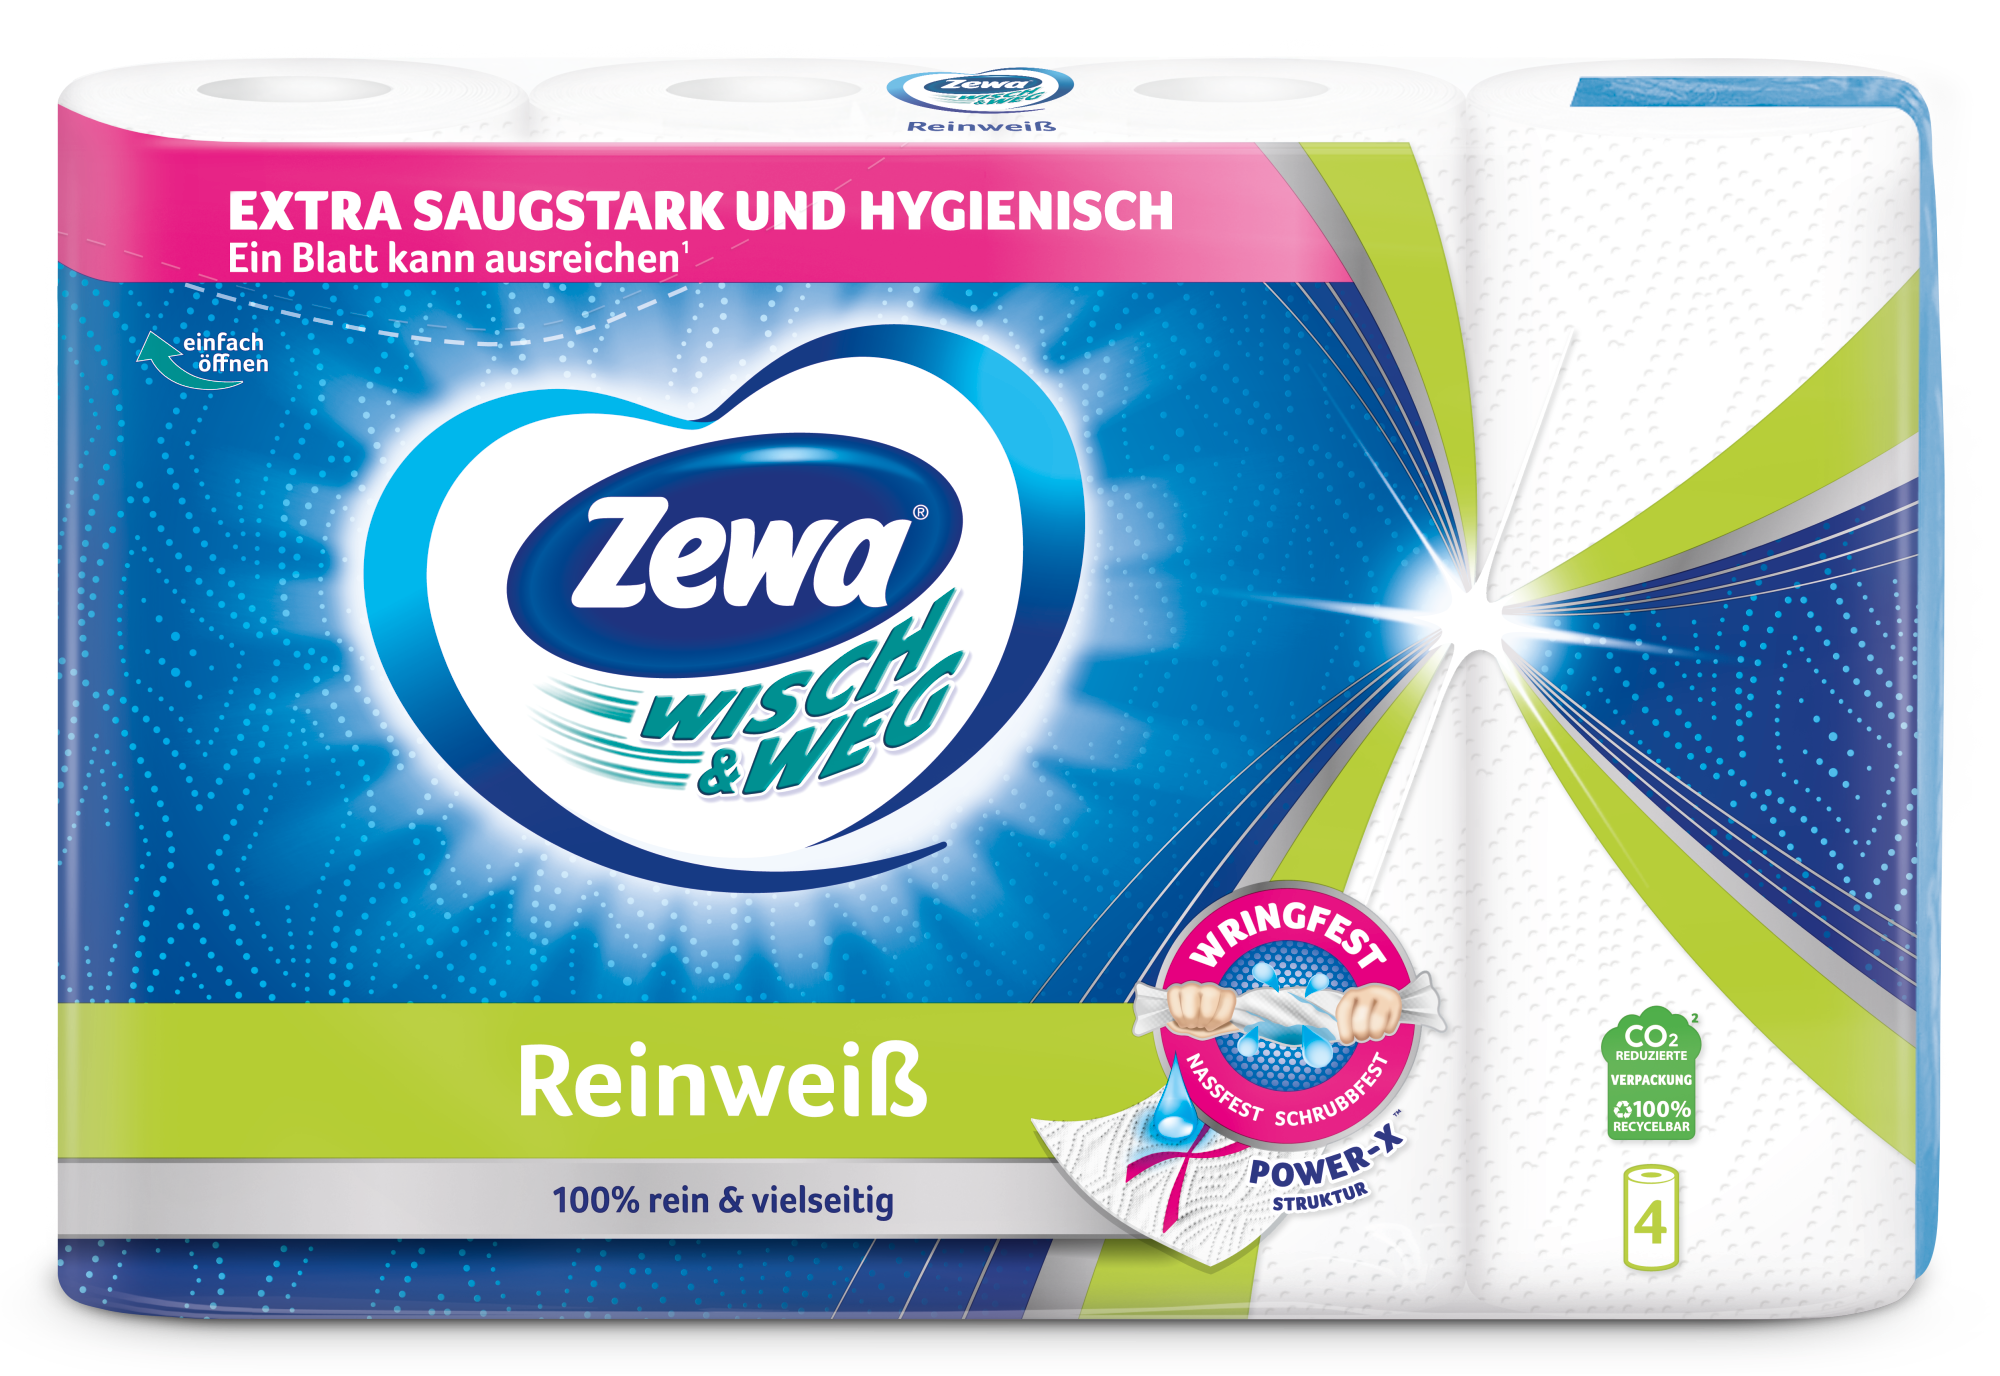 48 Stück Zewa Wisch&Weg Reinweiss Küchenrolle Mit Power-X-Struktur 